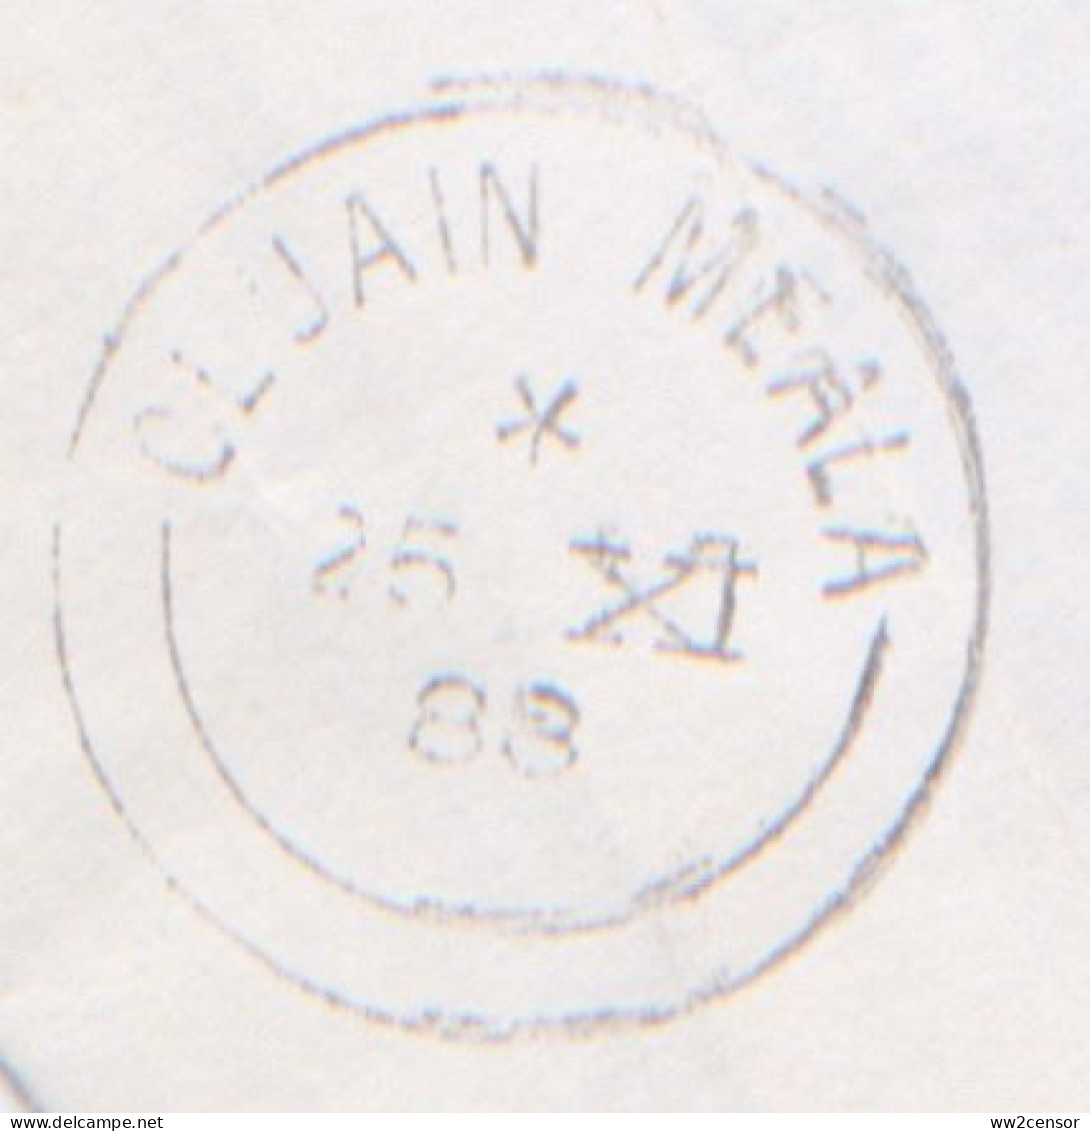 Express Mail 1988 From Clonmel, Ireland-Irlande-Irland -> Netherlands - Briefe U. Dokumente